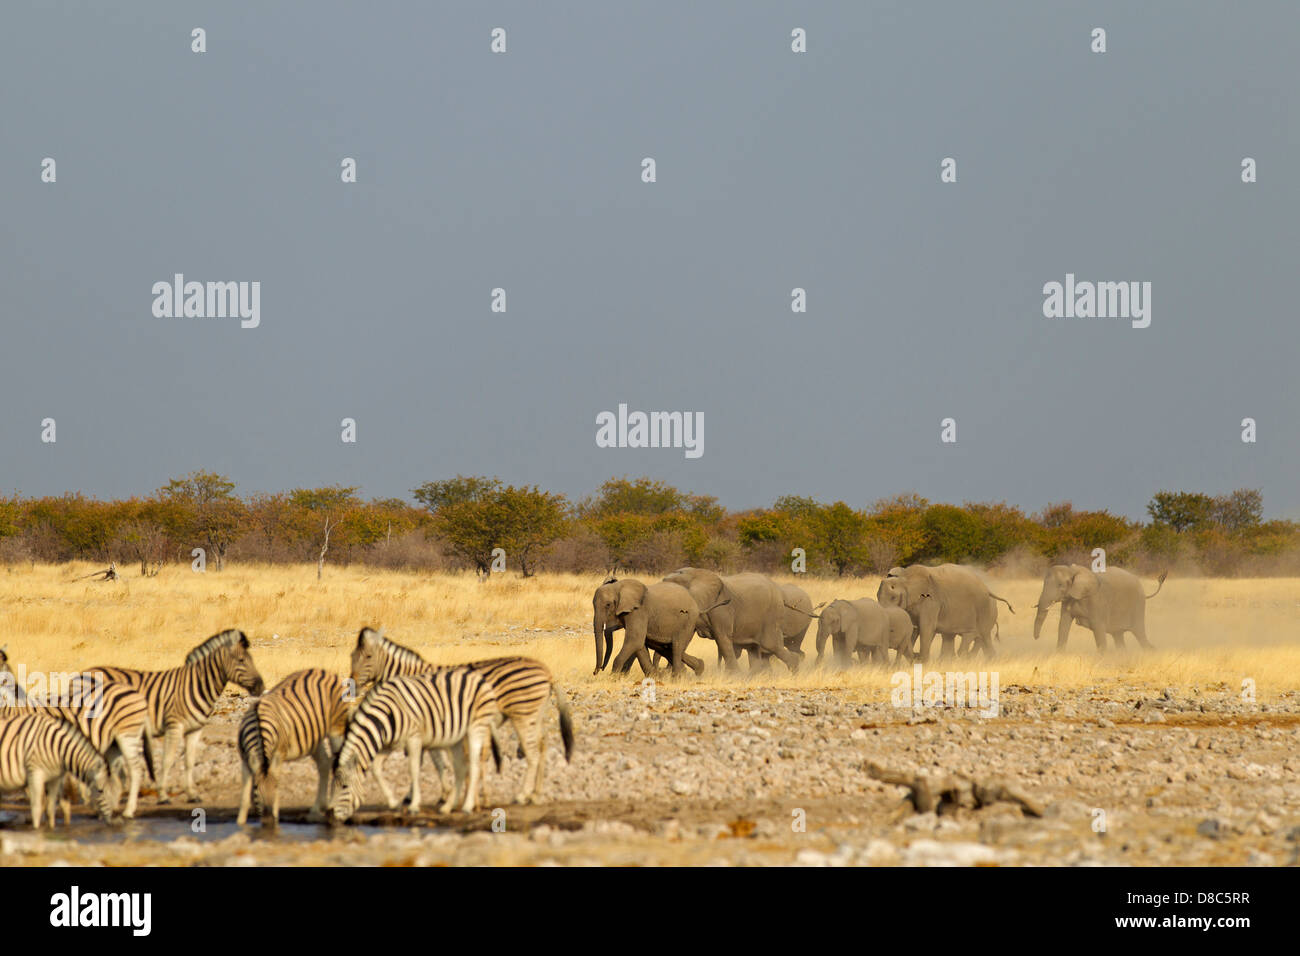 Elephants and zebras at waterhole, Rietfontein, Namibia Stock Photo